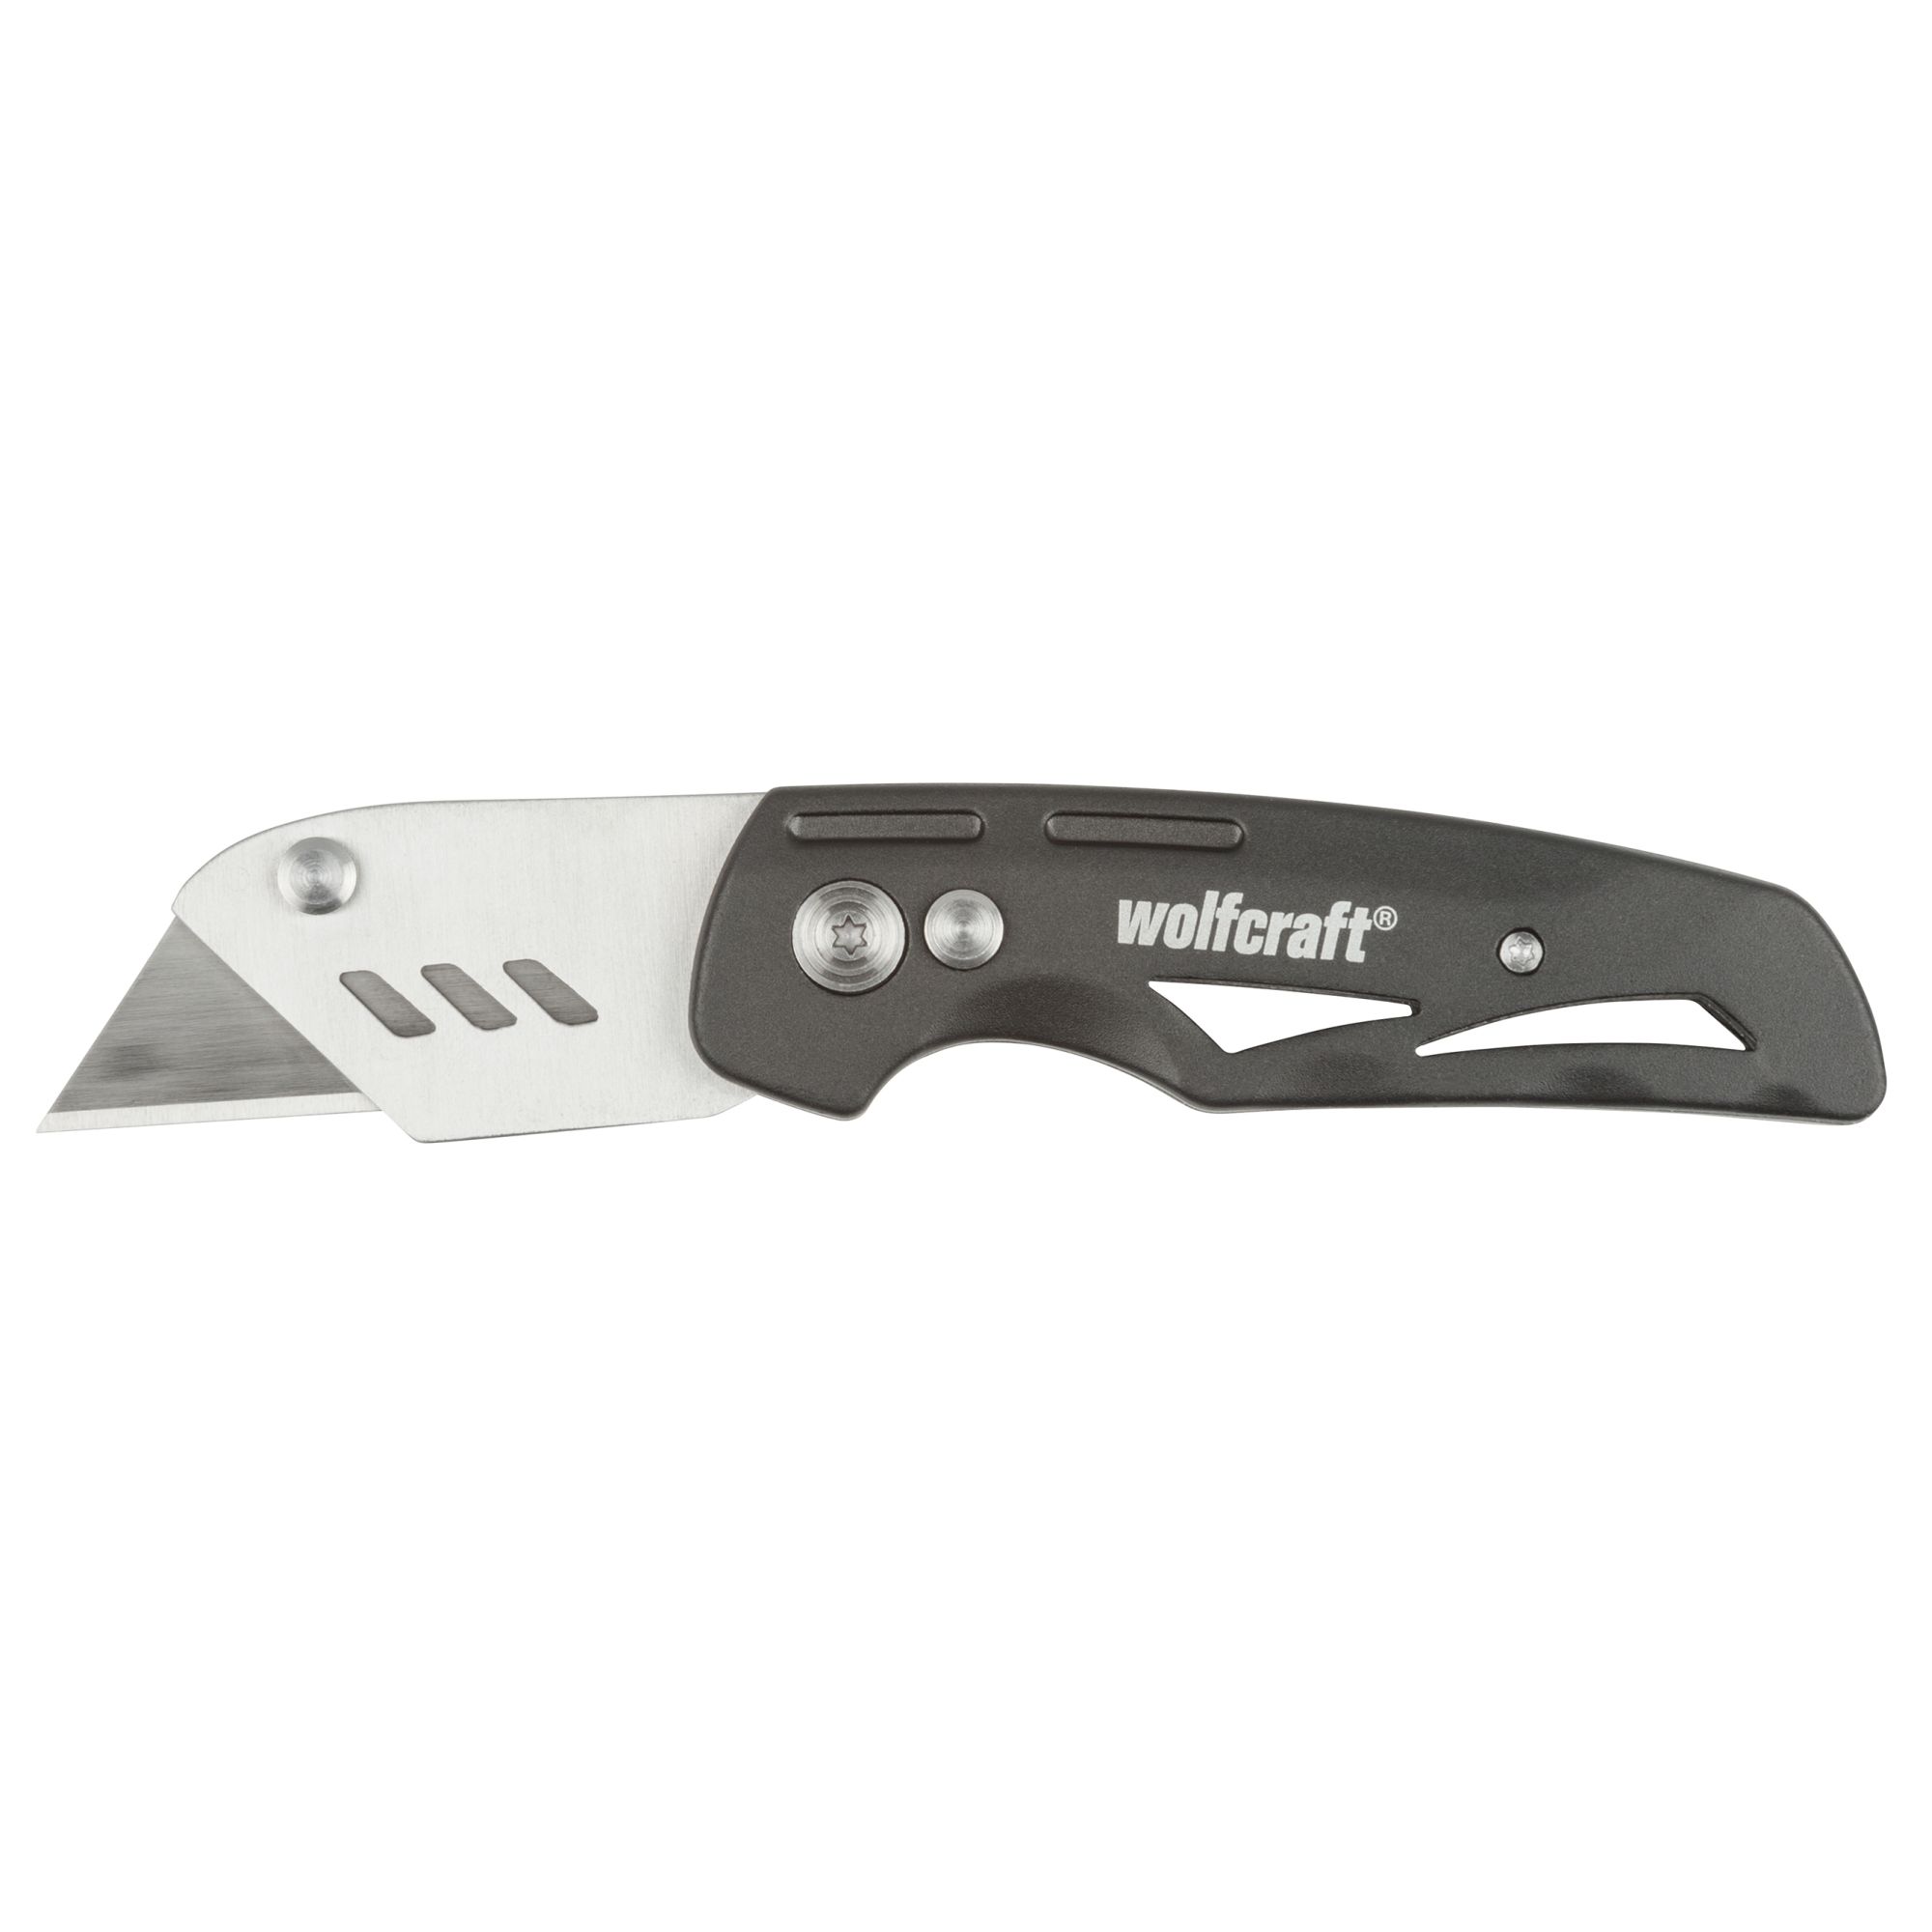 Cutter profesional con cuchilla trapezoidal Wolfcraft . Ergonómico y  duradero